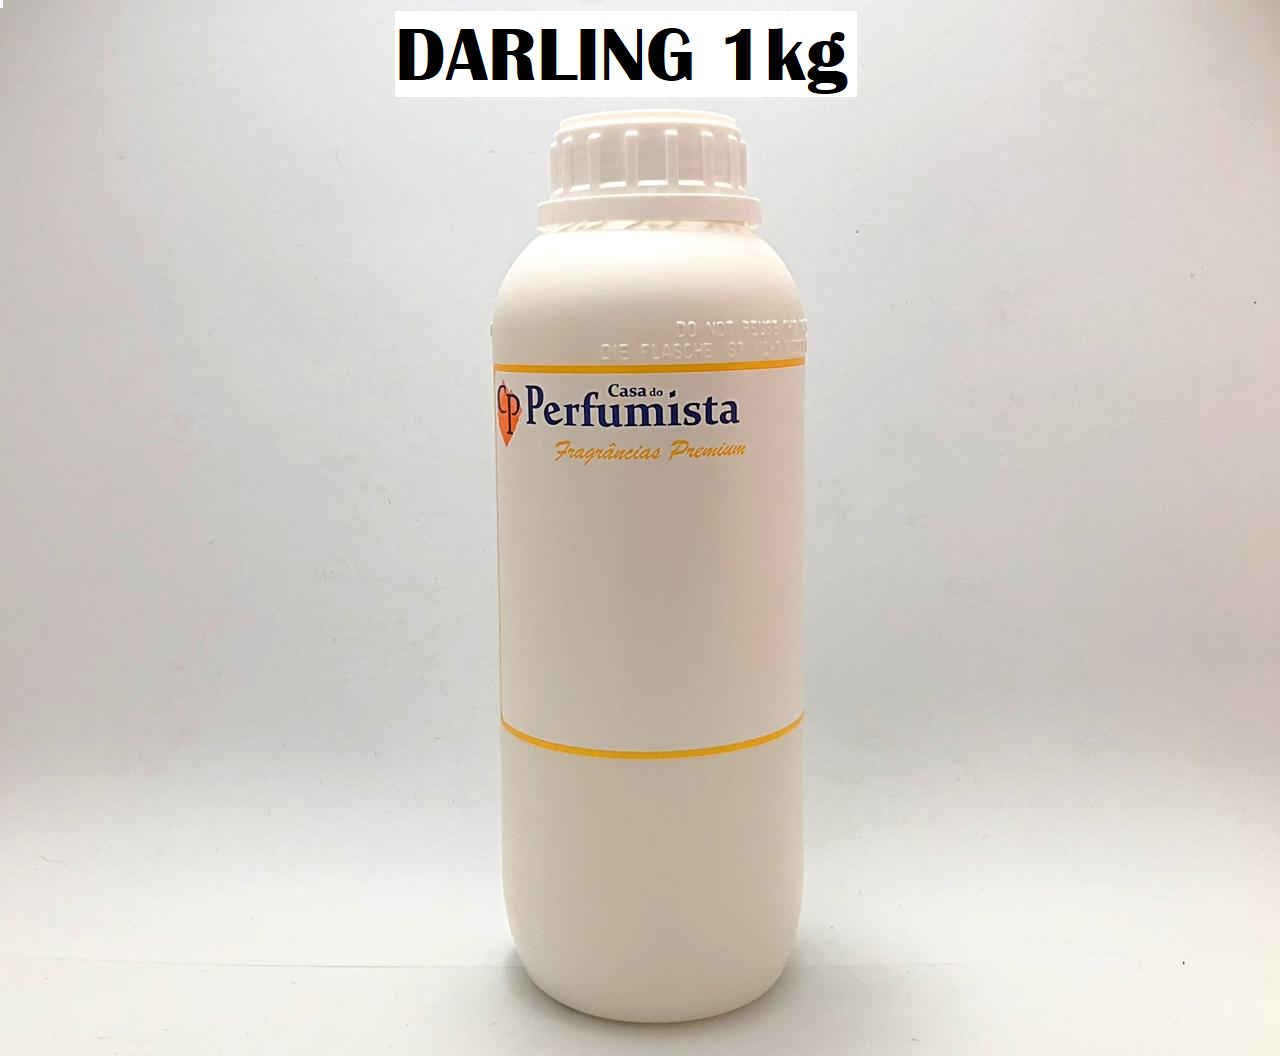 DARLING - 1kg